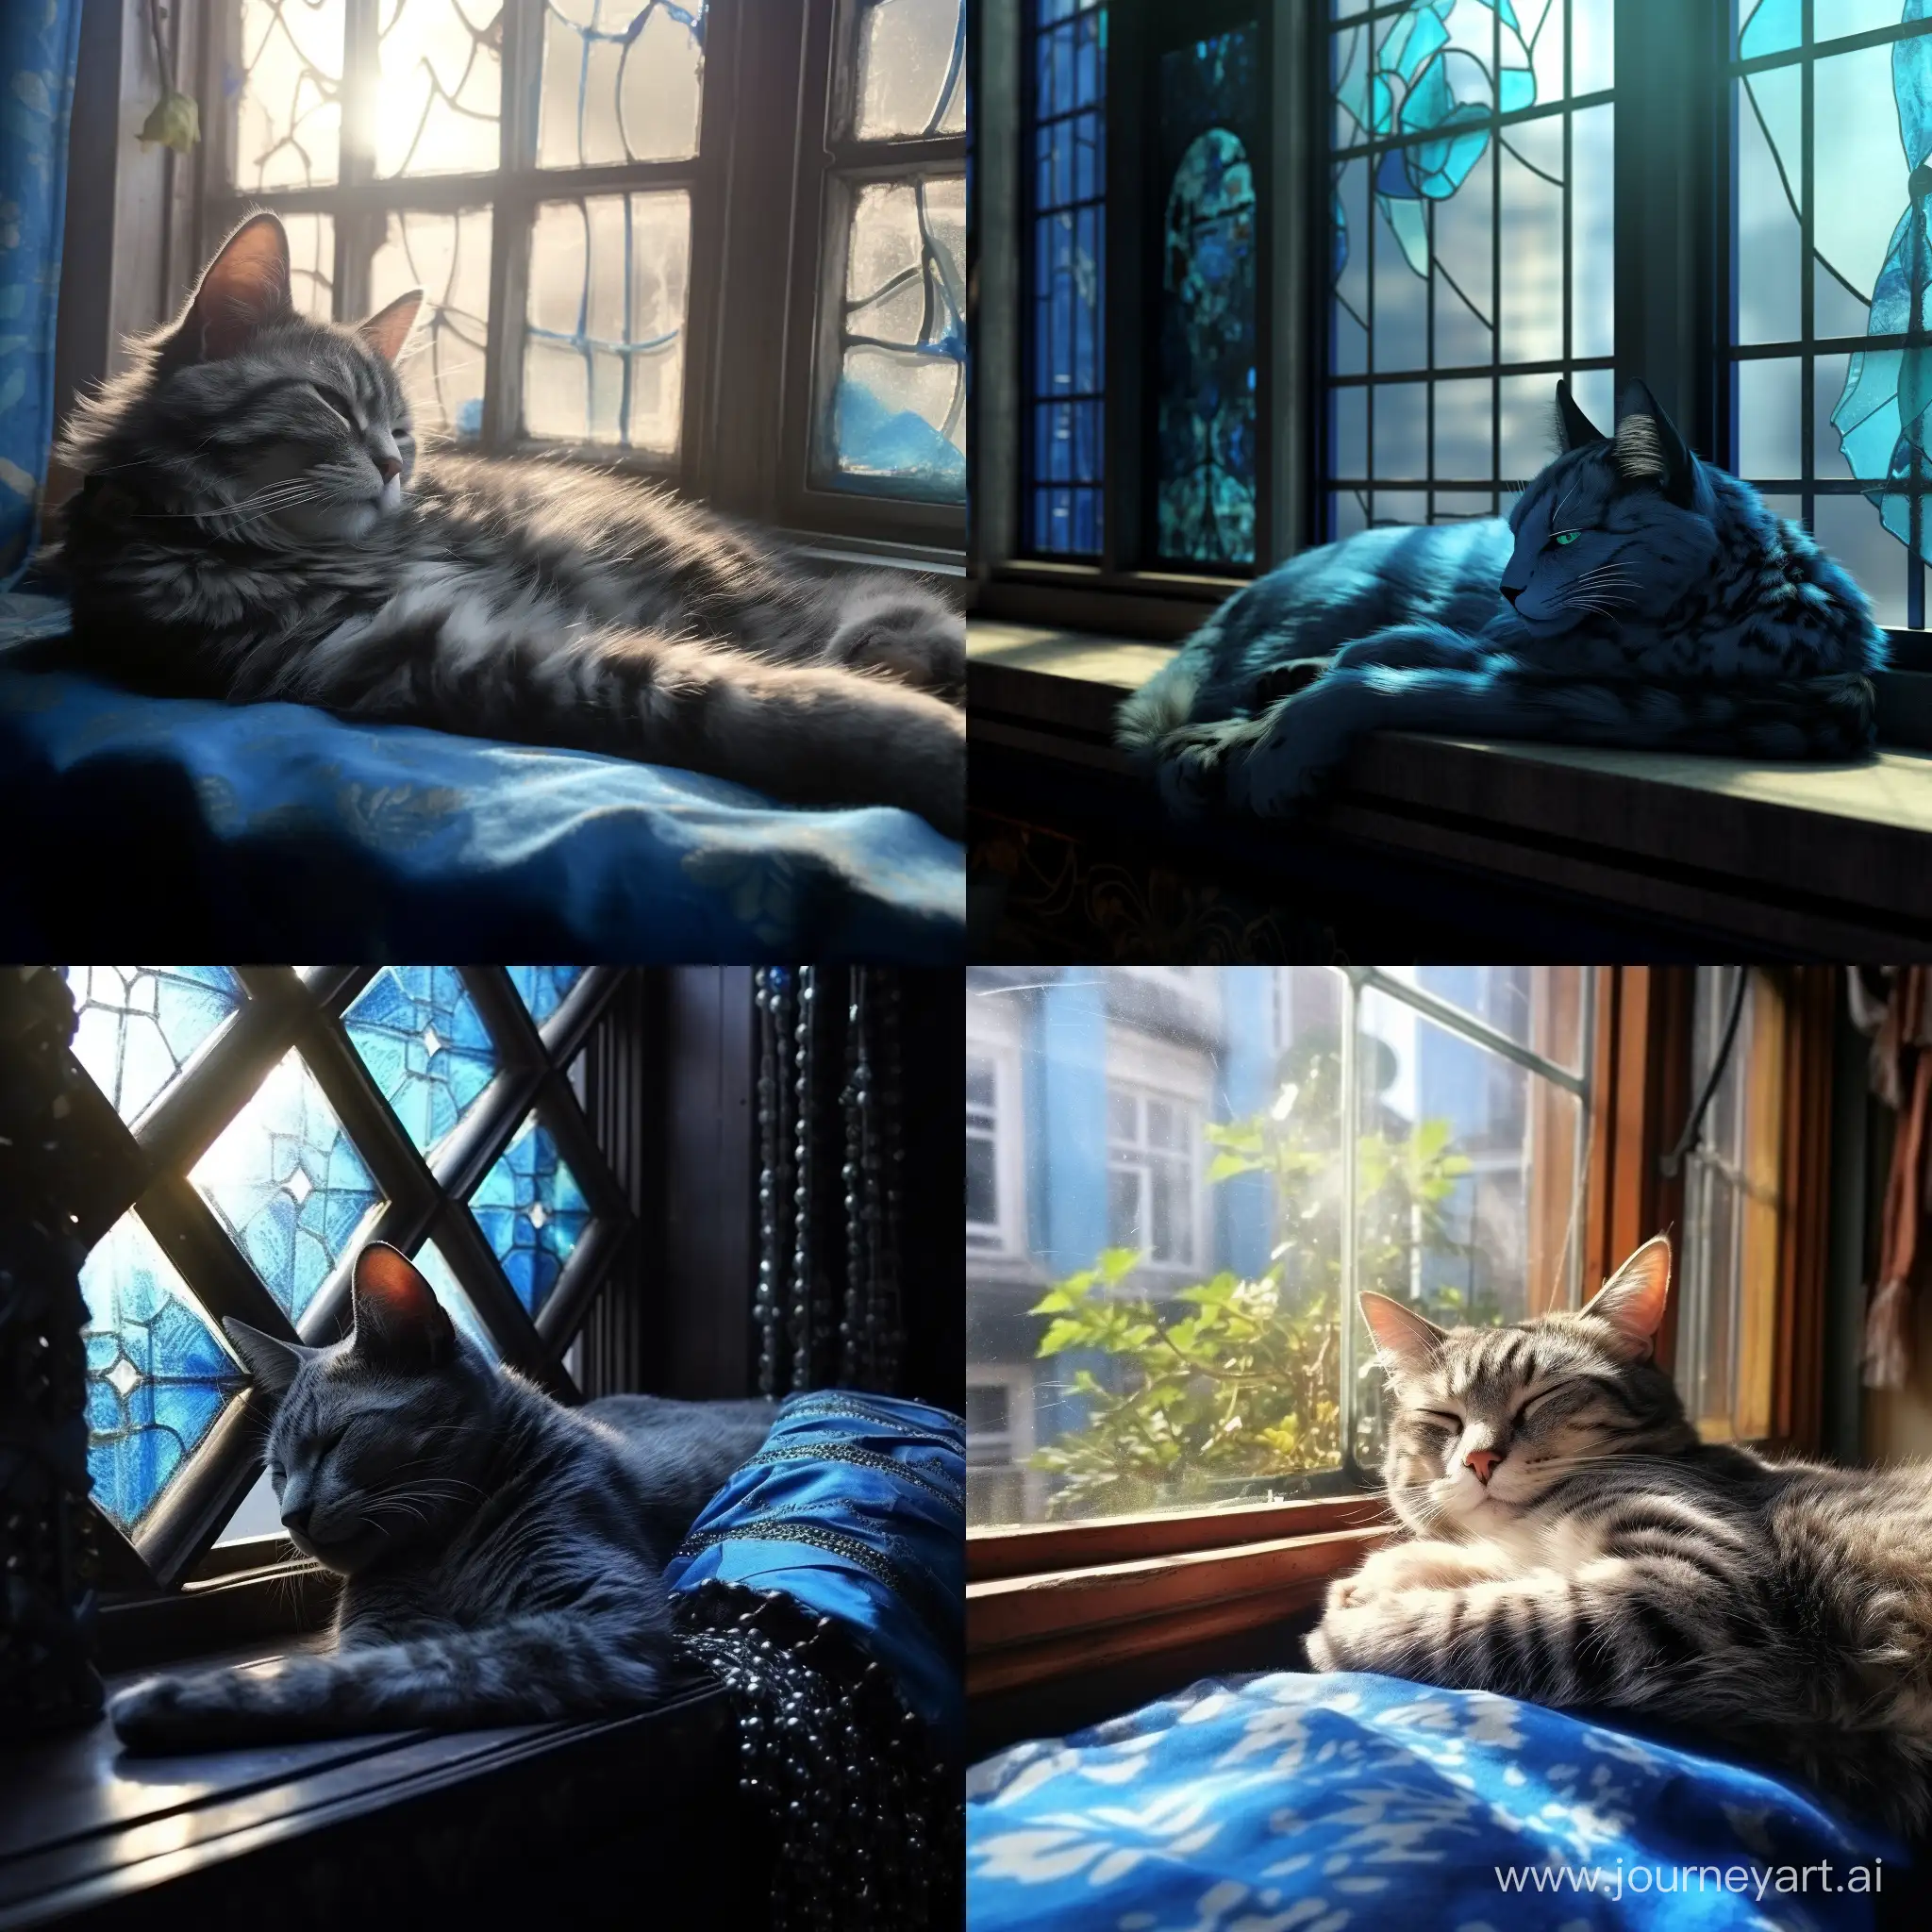 Action::1.5, голубая кошка с черными узорами лениво разлеглась на фоне окна, мягкий свет проникает через окна отбрасывая блики на кошку